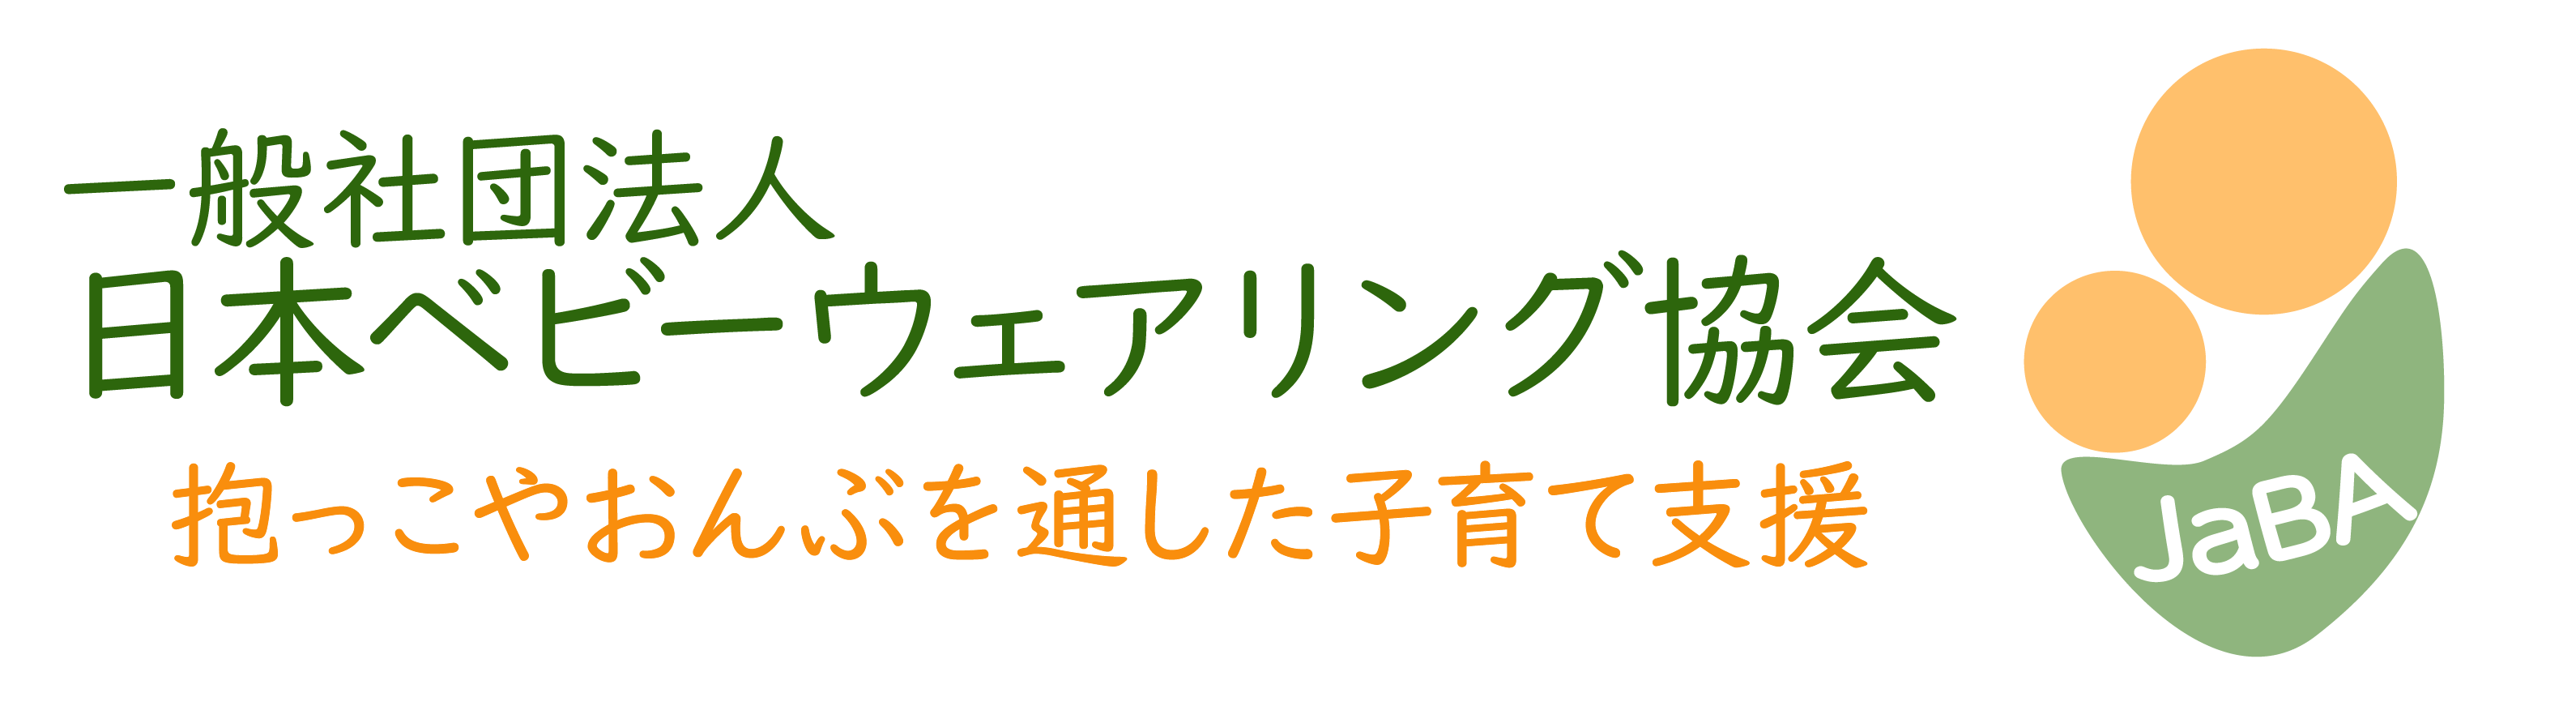 一般社団法人 日本ベビーウェアリング協会